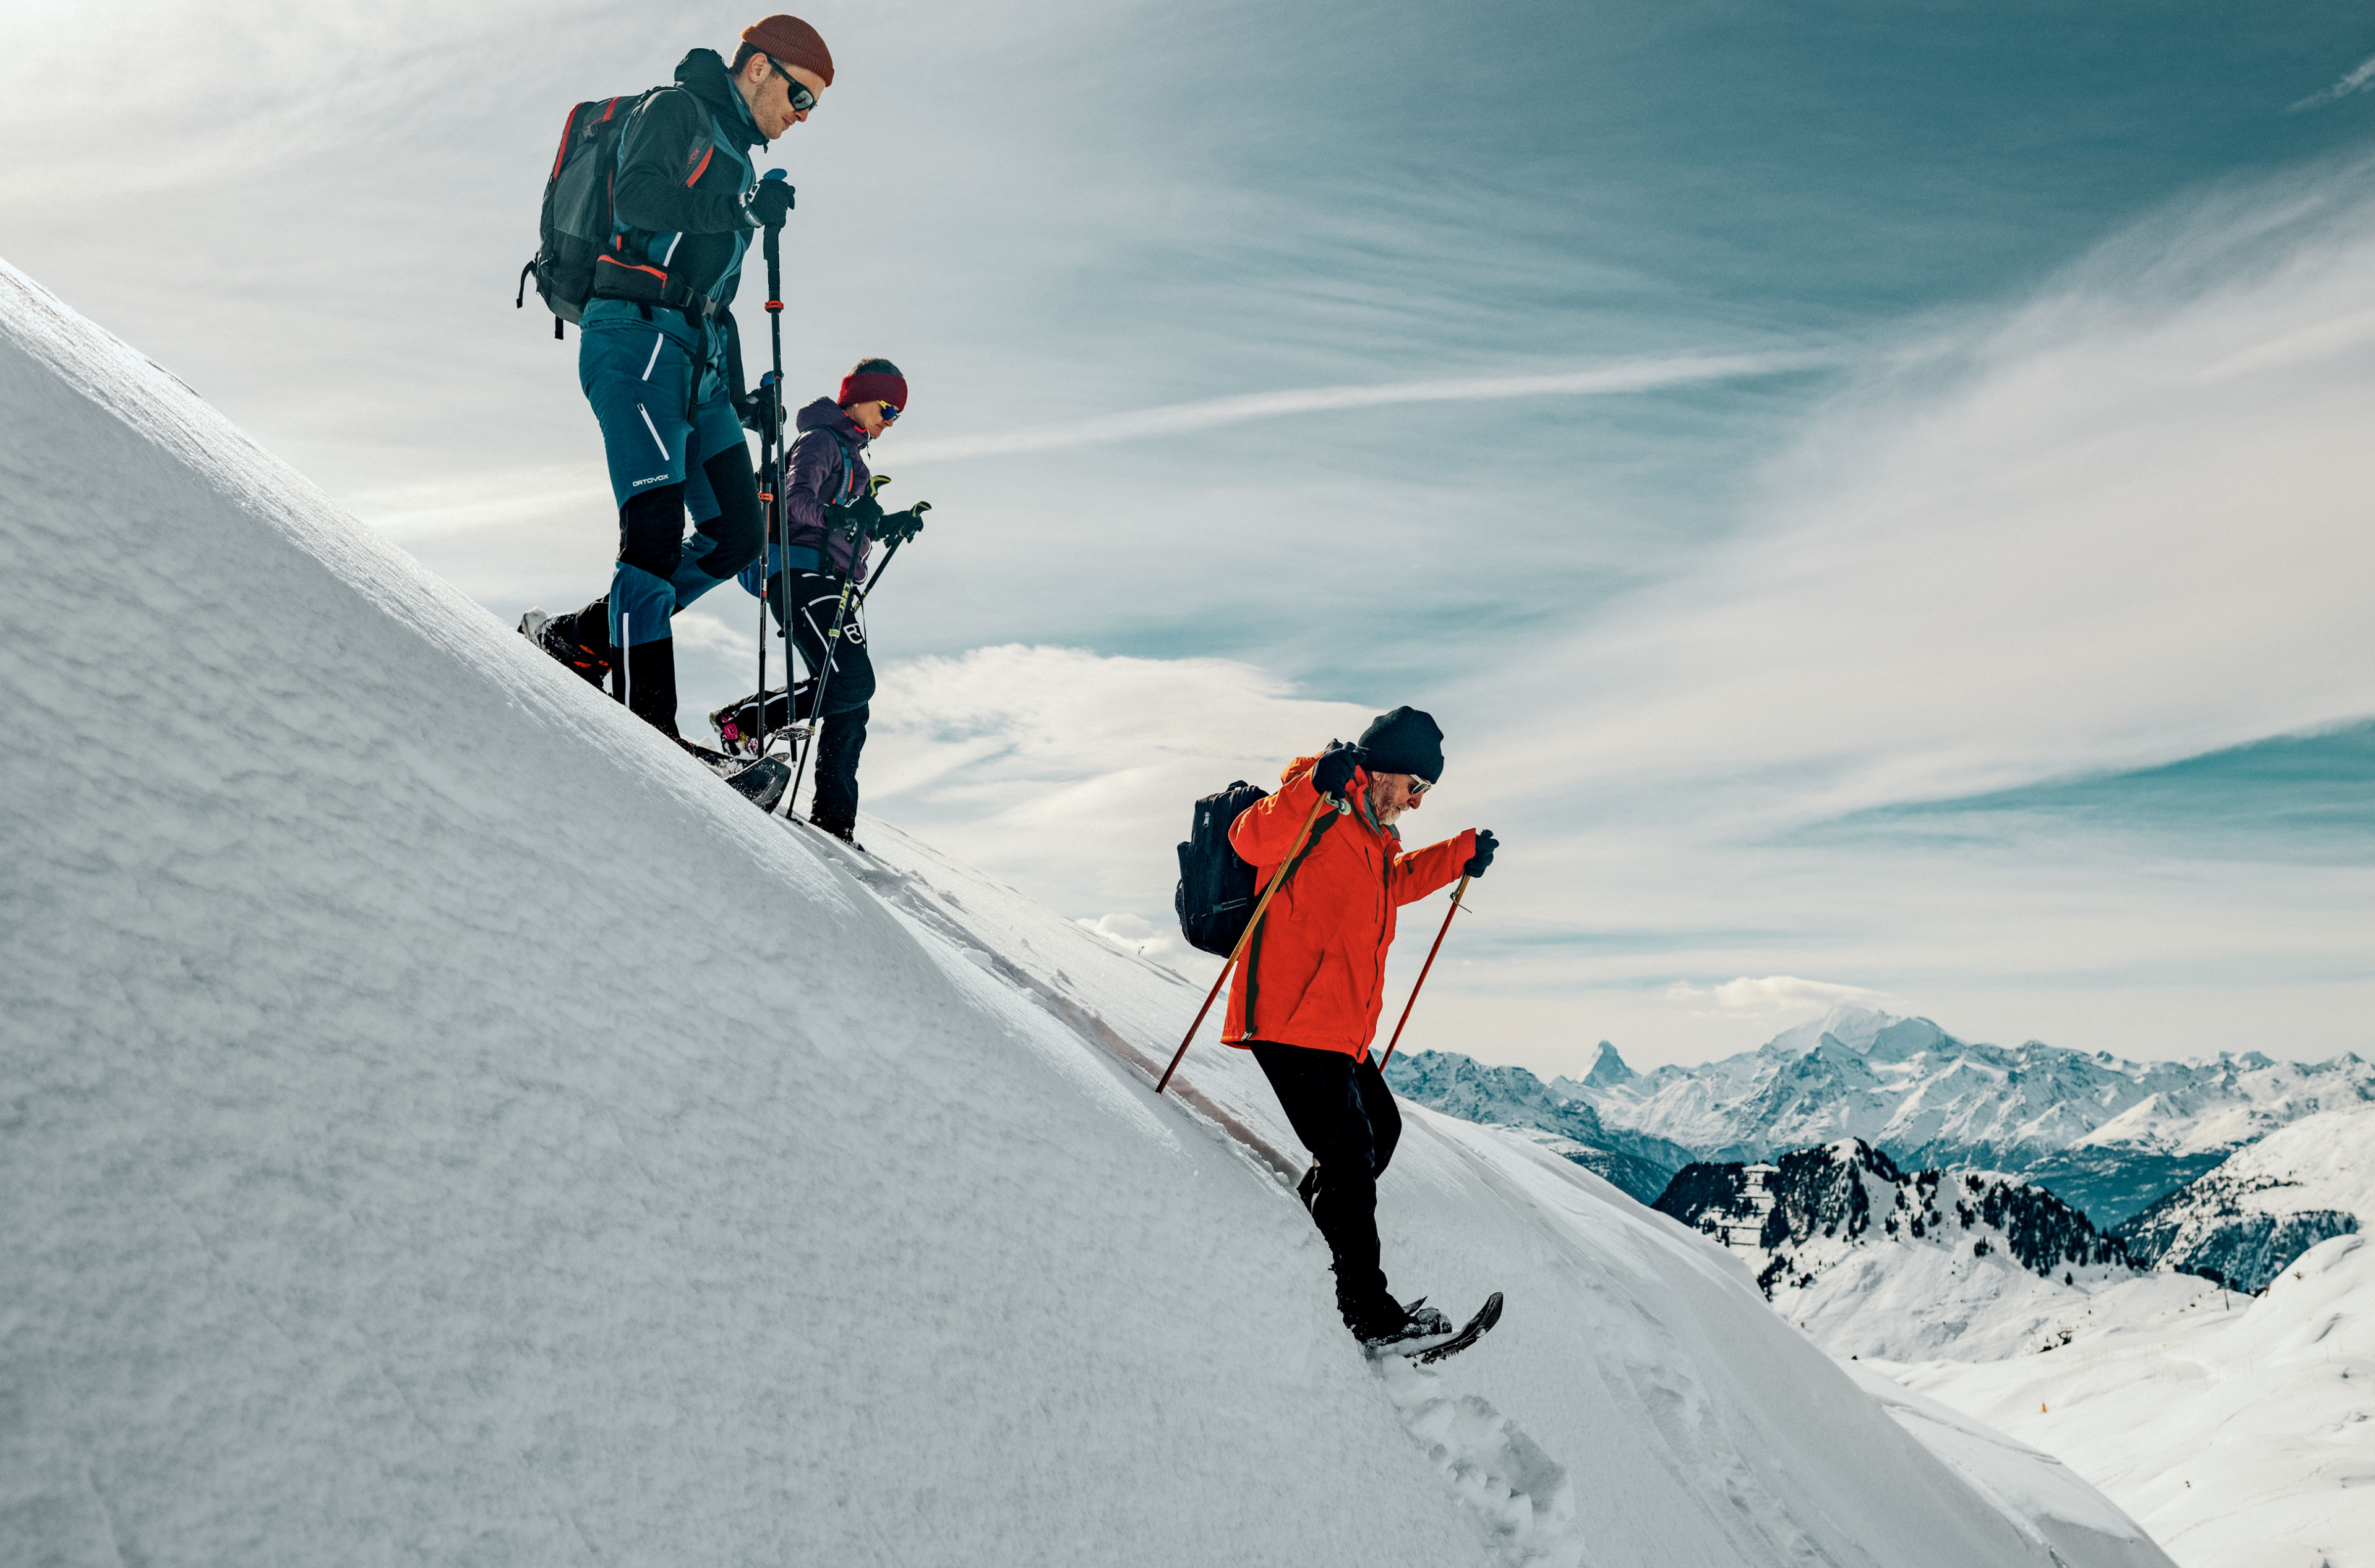 Abstieg über kleine Schneeverwehungen- Ed zeigt wie es geht, Wallis, Schweiz